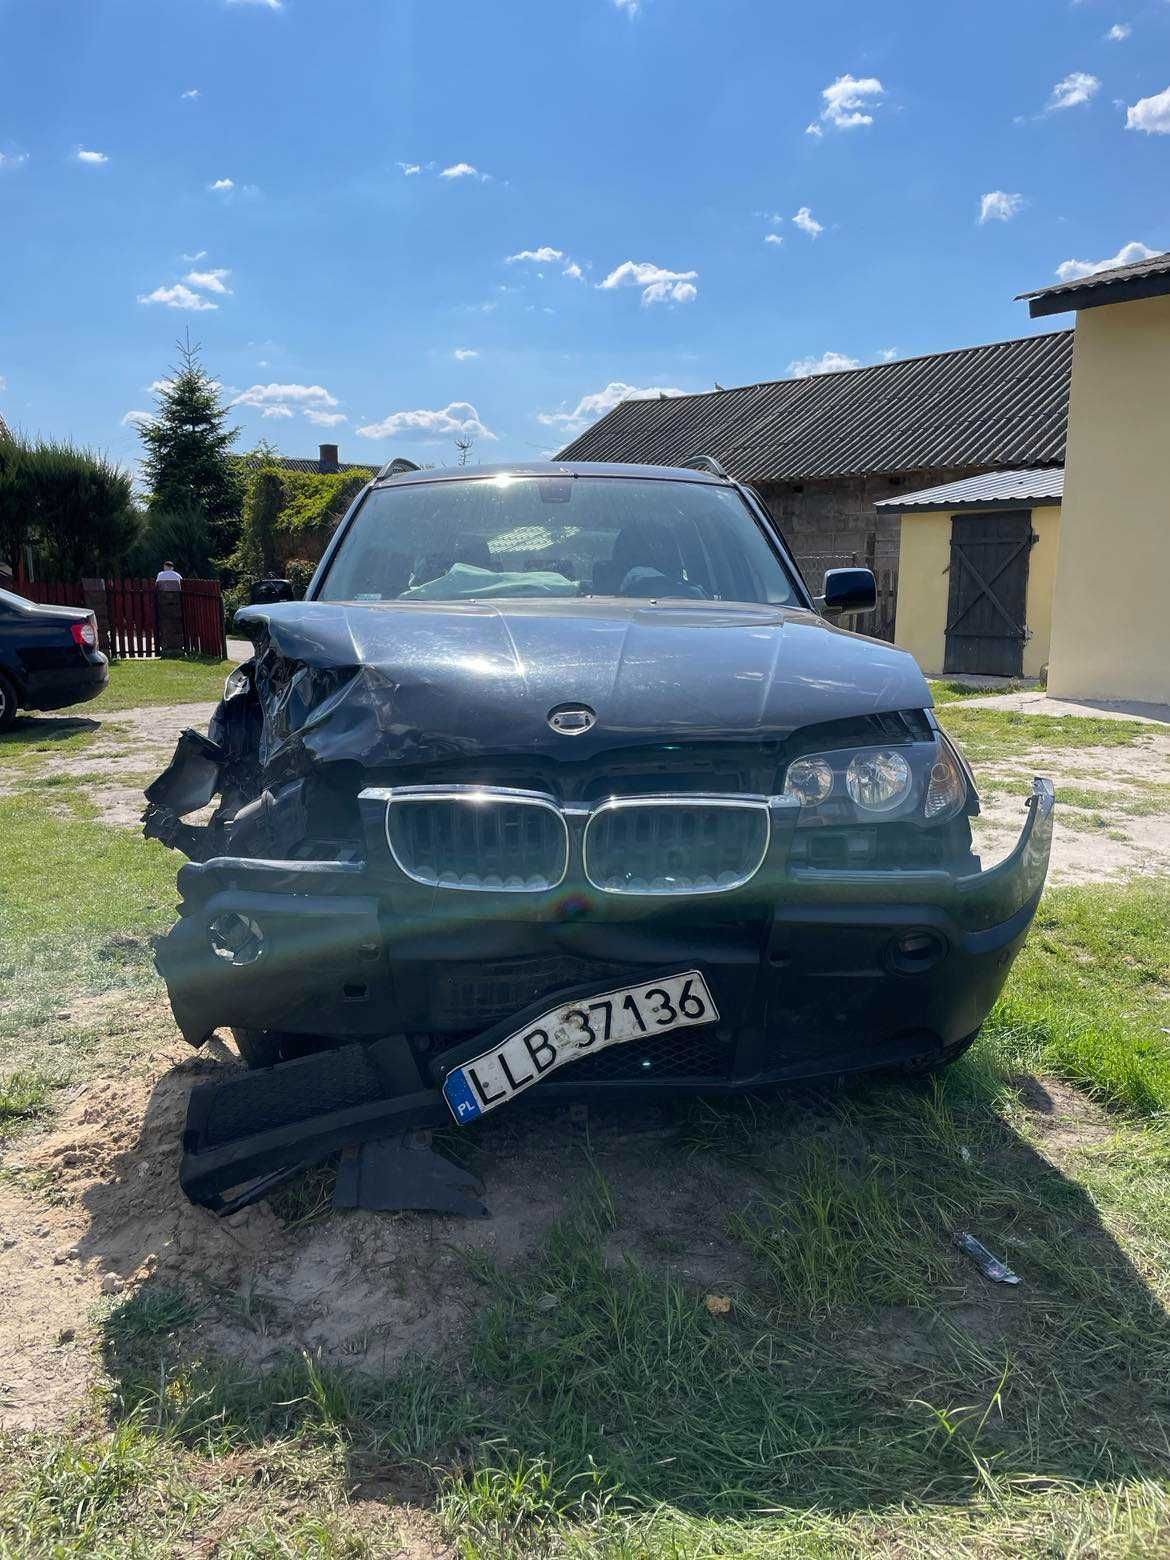 BMW X3 uszkodzony